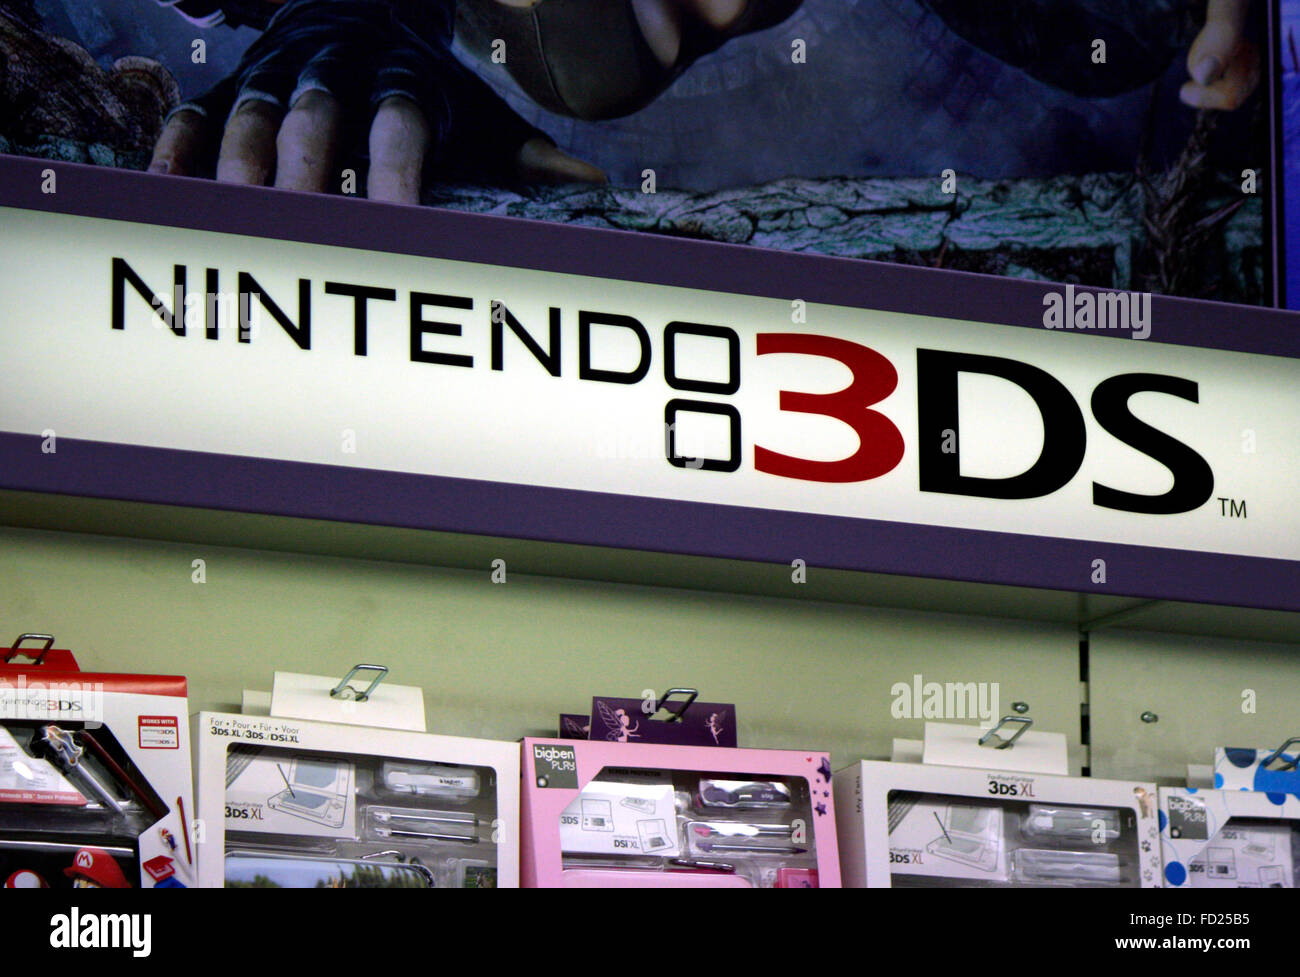 Nintendo 3ds Stockfotos und -bilder Kaufen - Alamy